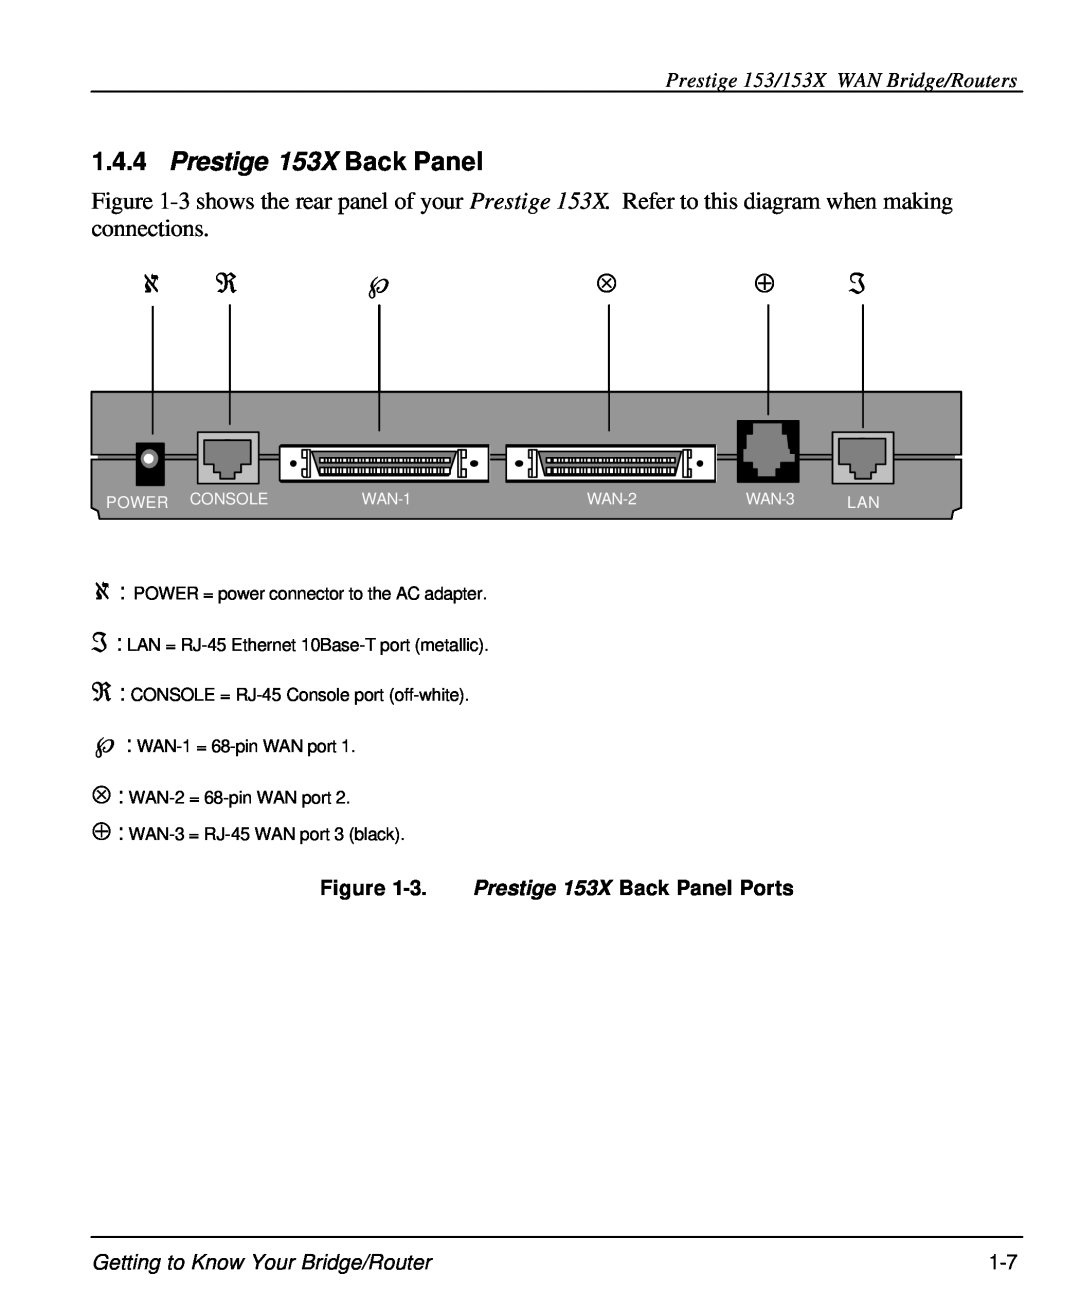 ZyXEL Communications user manual Prestige 153/153X WAN Bridge/Routers, 3. Prestige 153X Back Panel Ports 